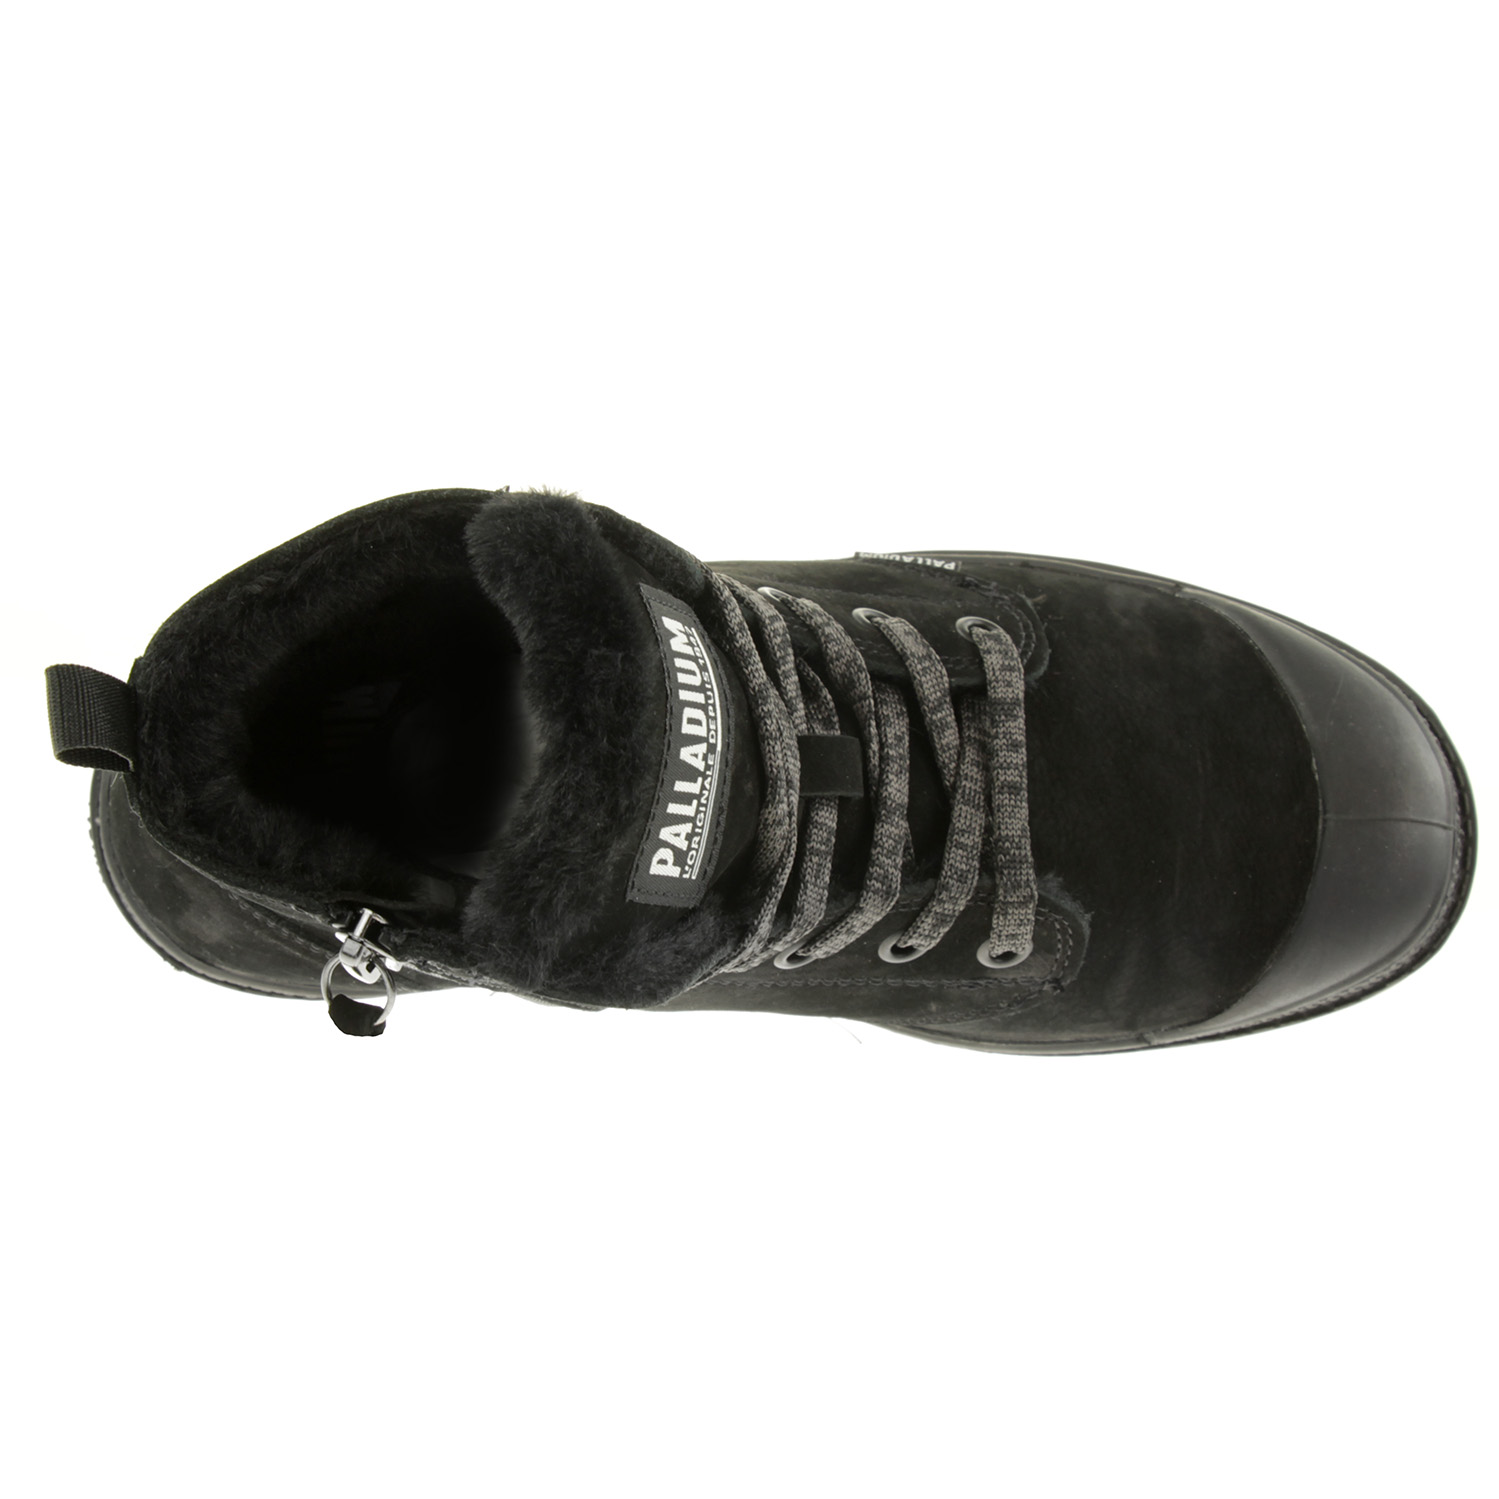 PALLADIUM Damen Pampa Hi Zip WL Winter Ankle Boots Stiefelette 95982 Schwarz 